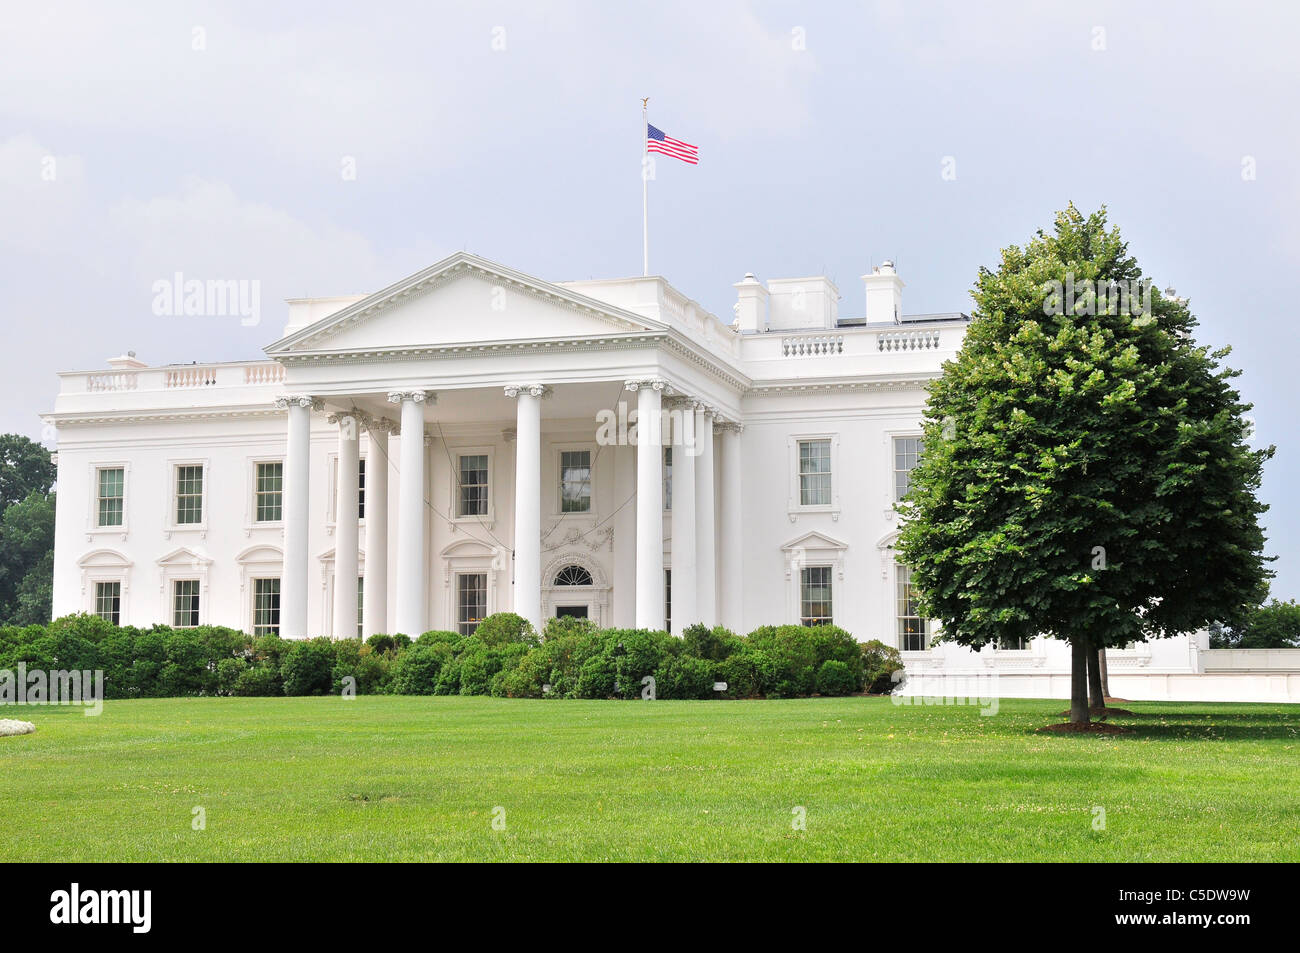 La Casa Blanca es la residencia oficial y principal lugar de trabajo del Presidente de los Estados Unidos. Foto de stock